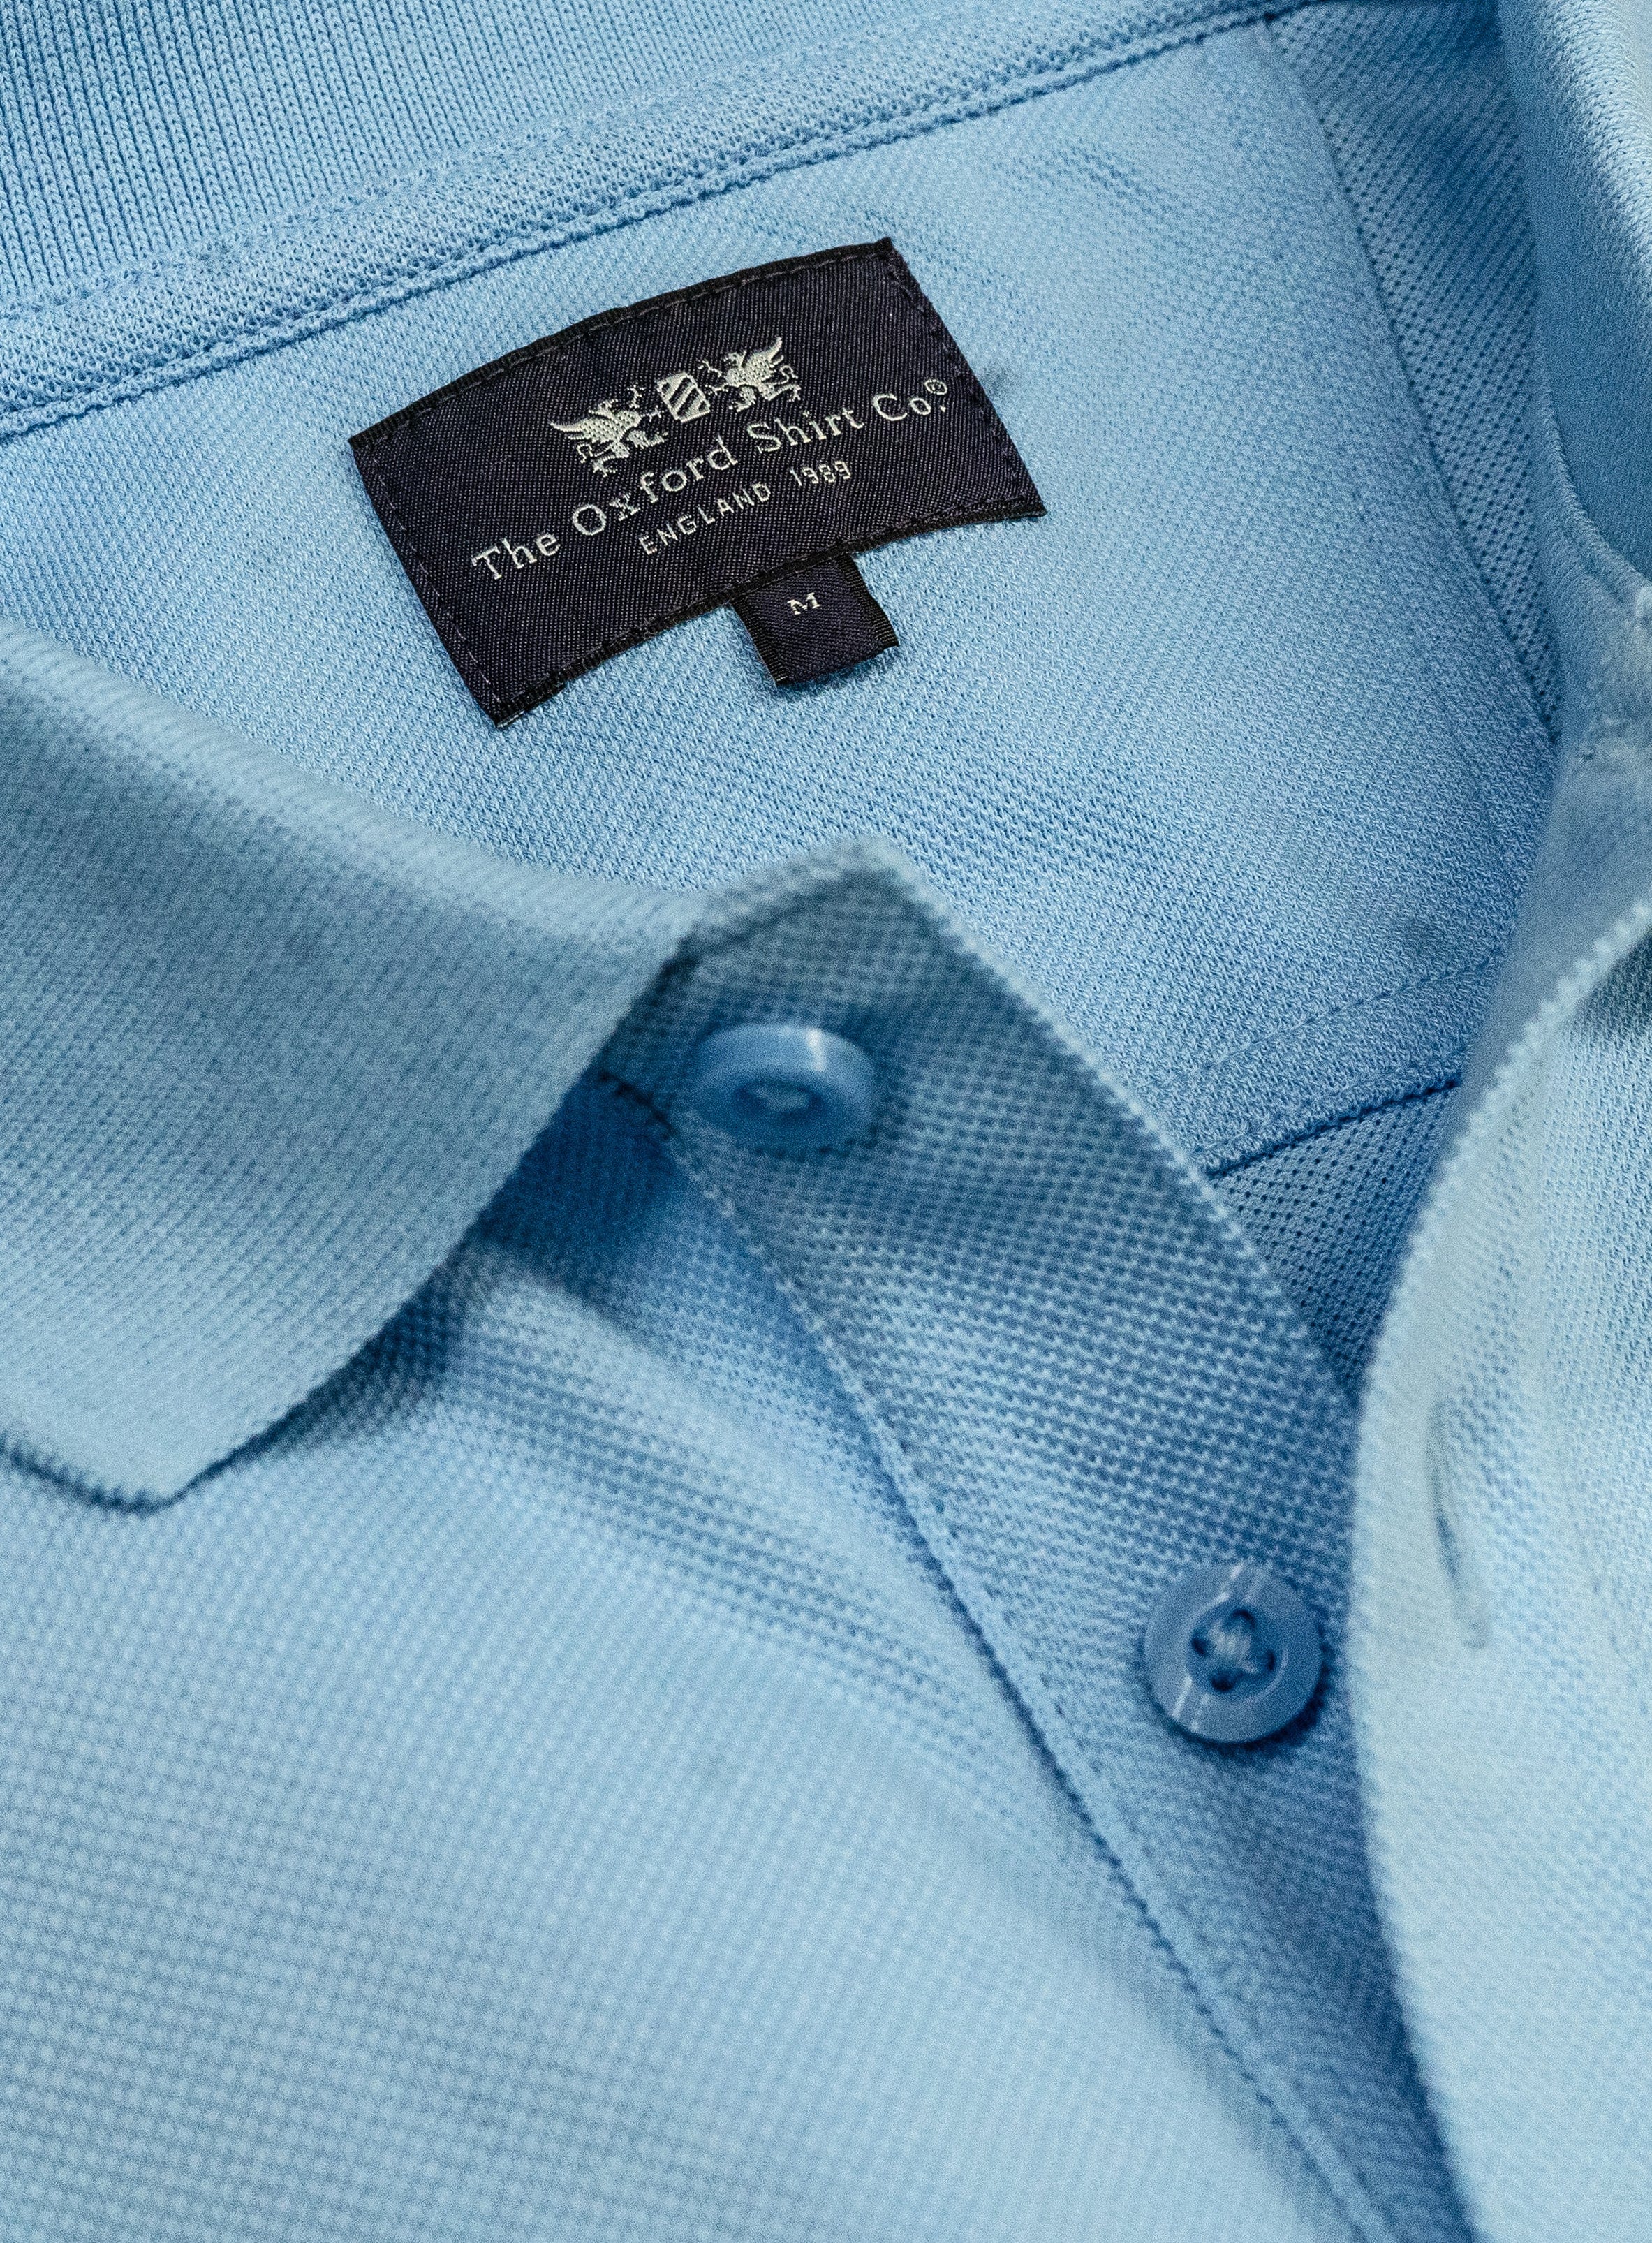 Pique Polo Shirt in Light Blue - Oxford Shirt Co.